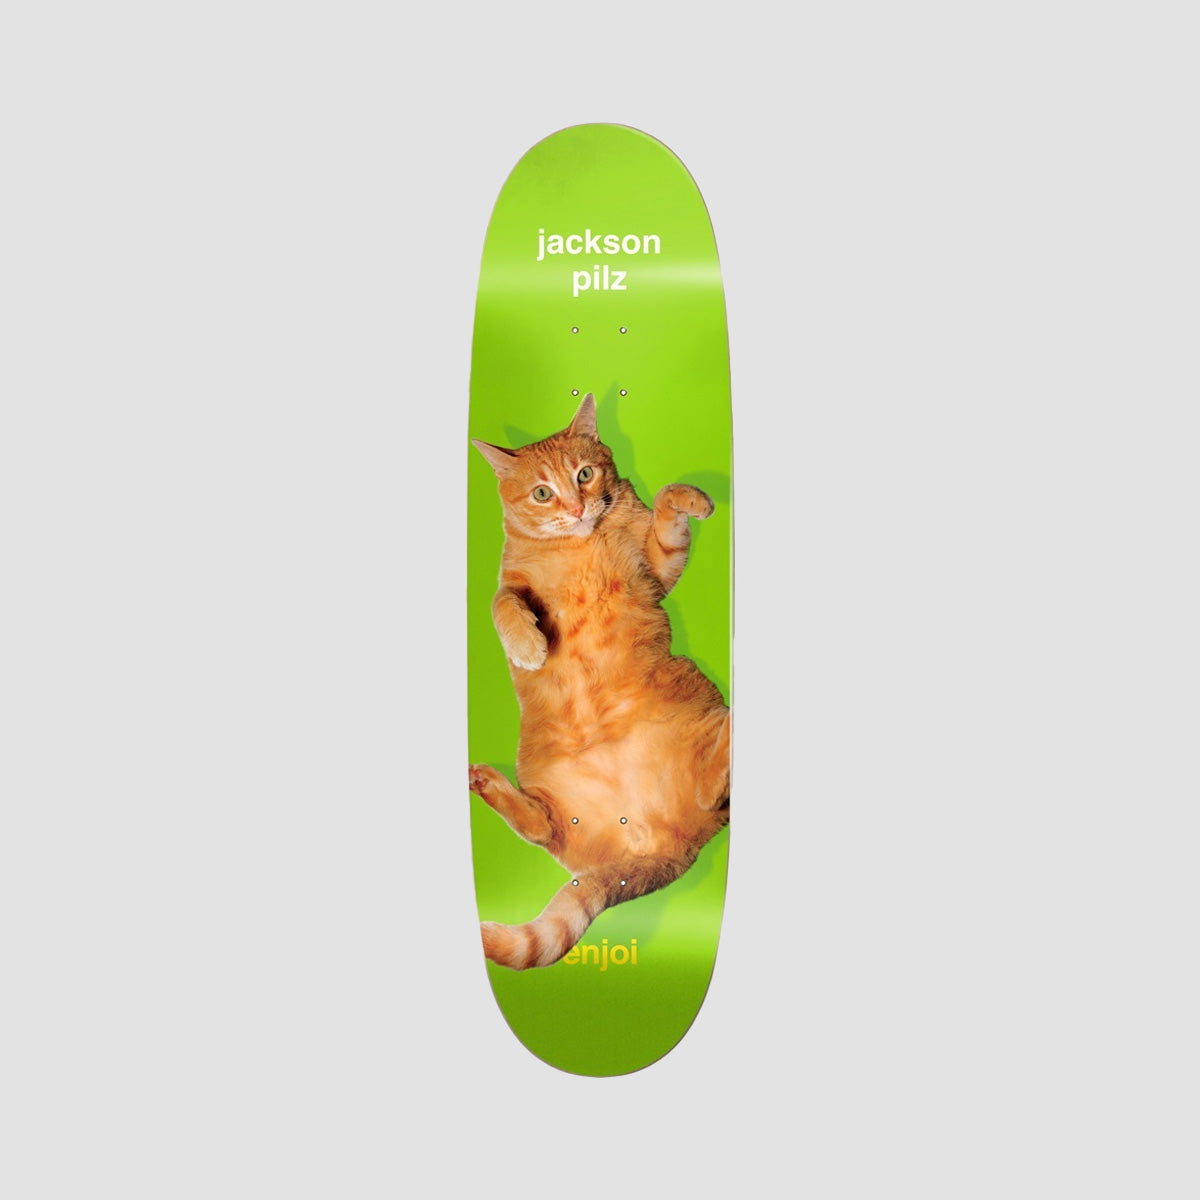 Enjoi Catnip R7 Skateboard Deck Jackson Pilz - 9.125"